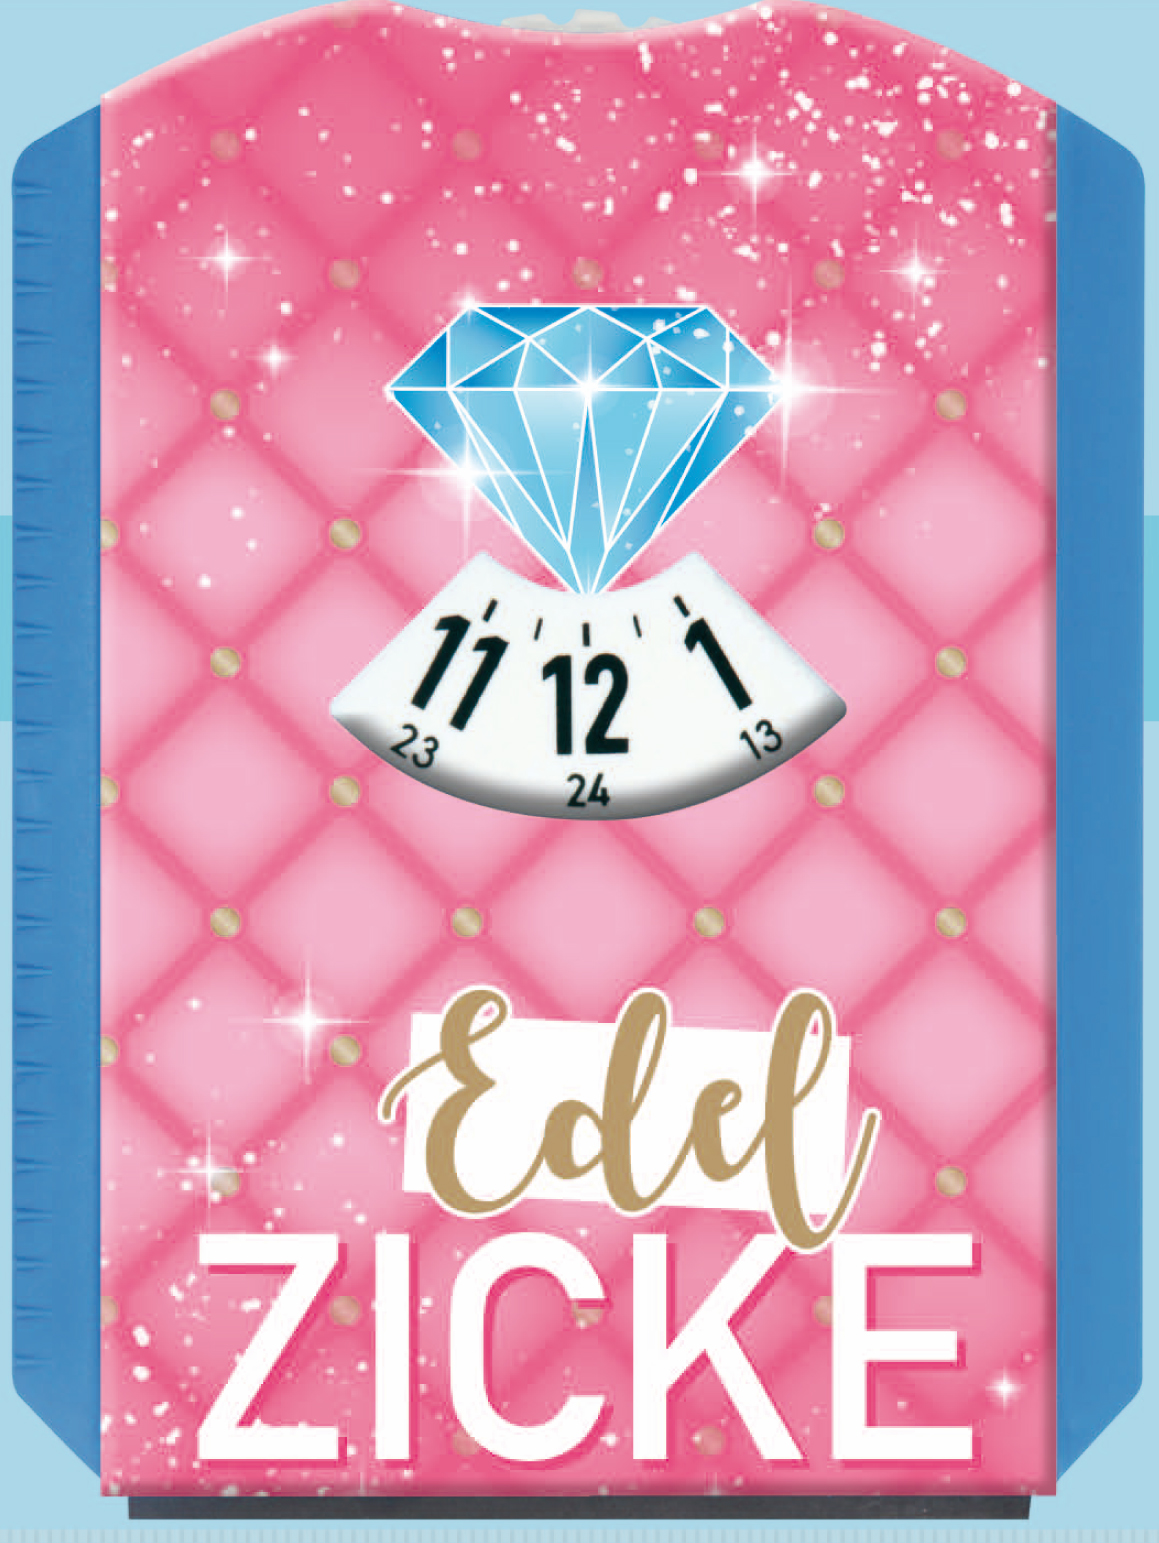 https://www.pigmento.de/media/image/92/03/32/eigenart-parkscheibe-eiskratzer-spassscheibe-edel-zicke-diamant-pink-solo-vorne.jpg